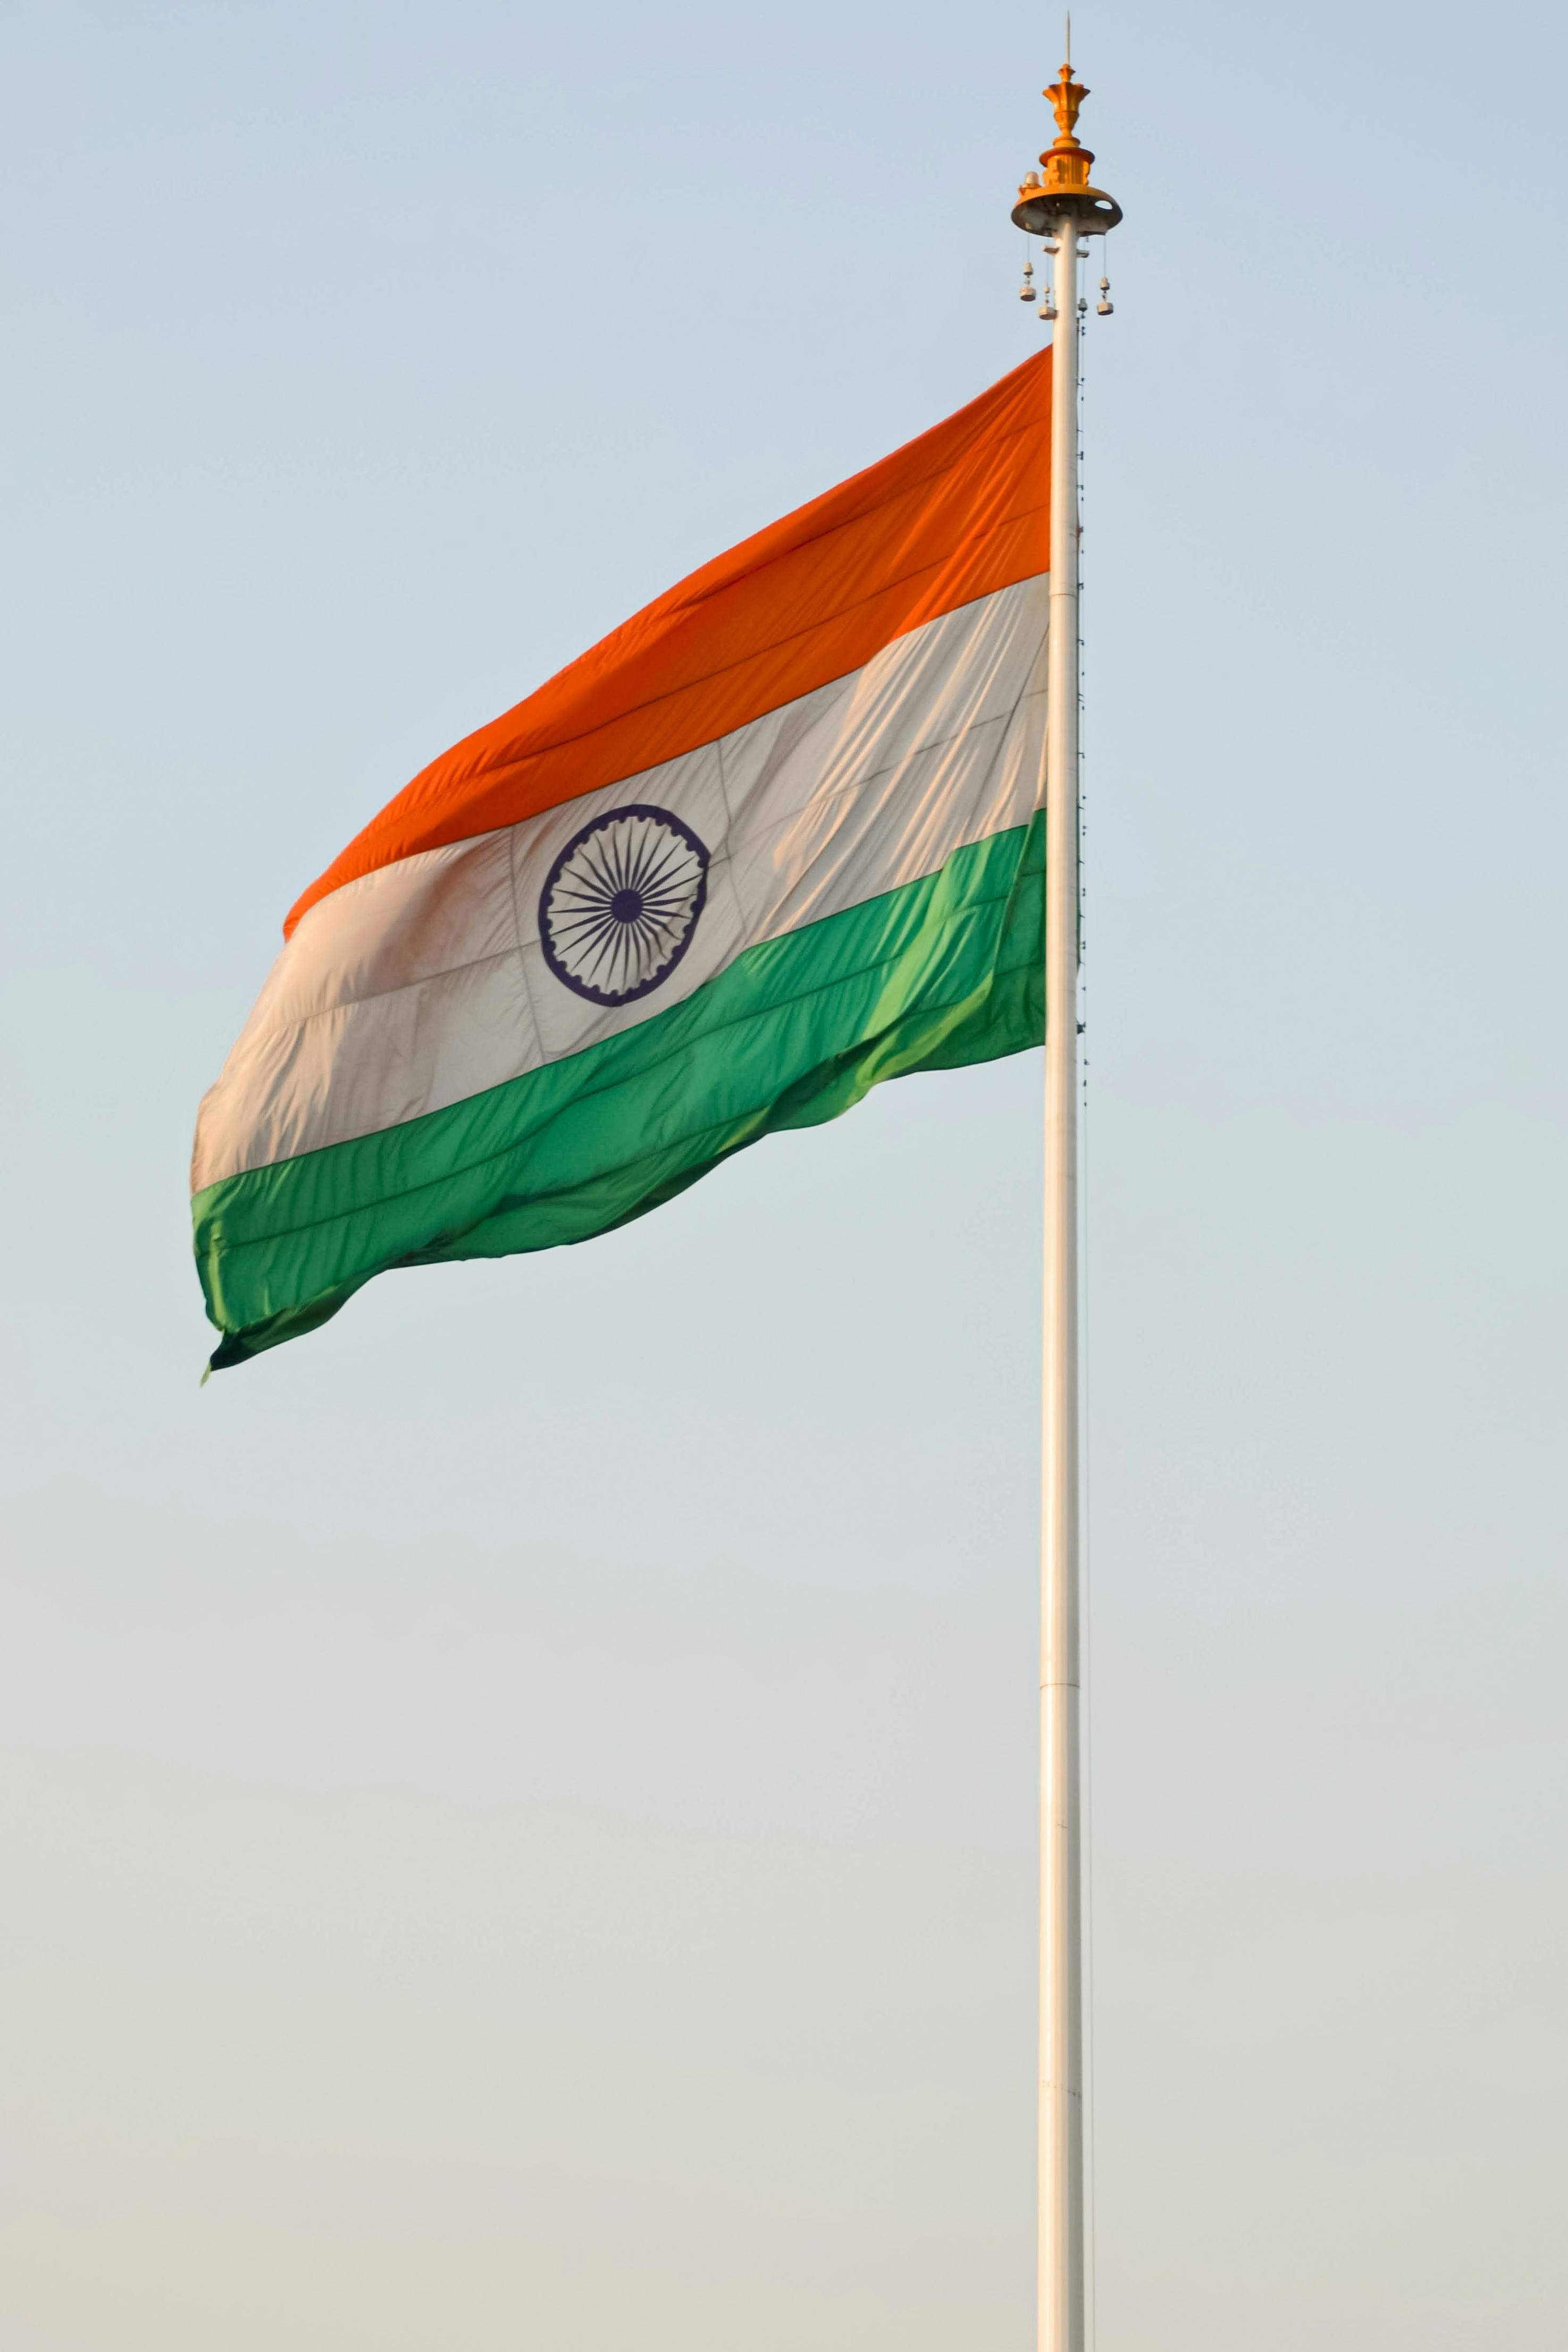 50 Indian National Flag Wallpaper 3D  WallpaperSafari